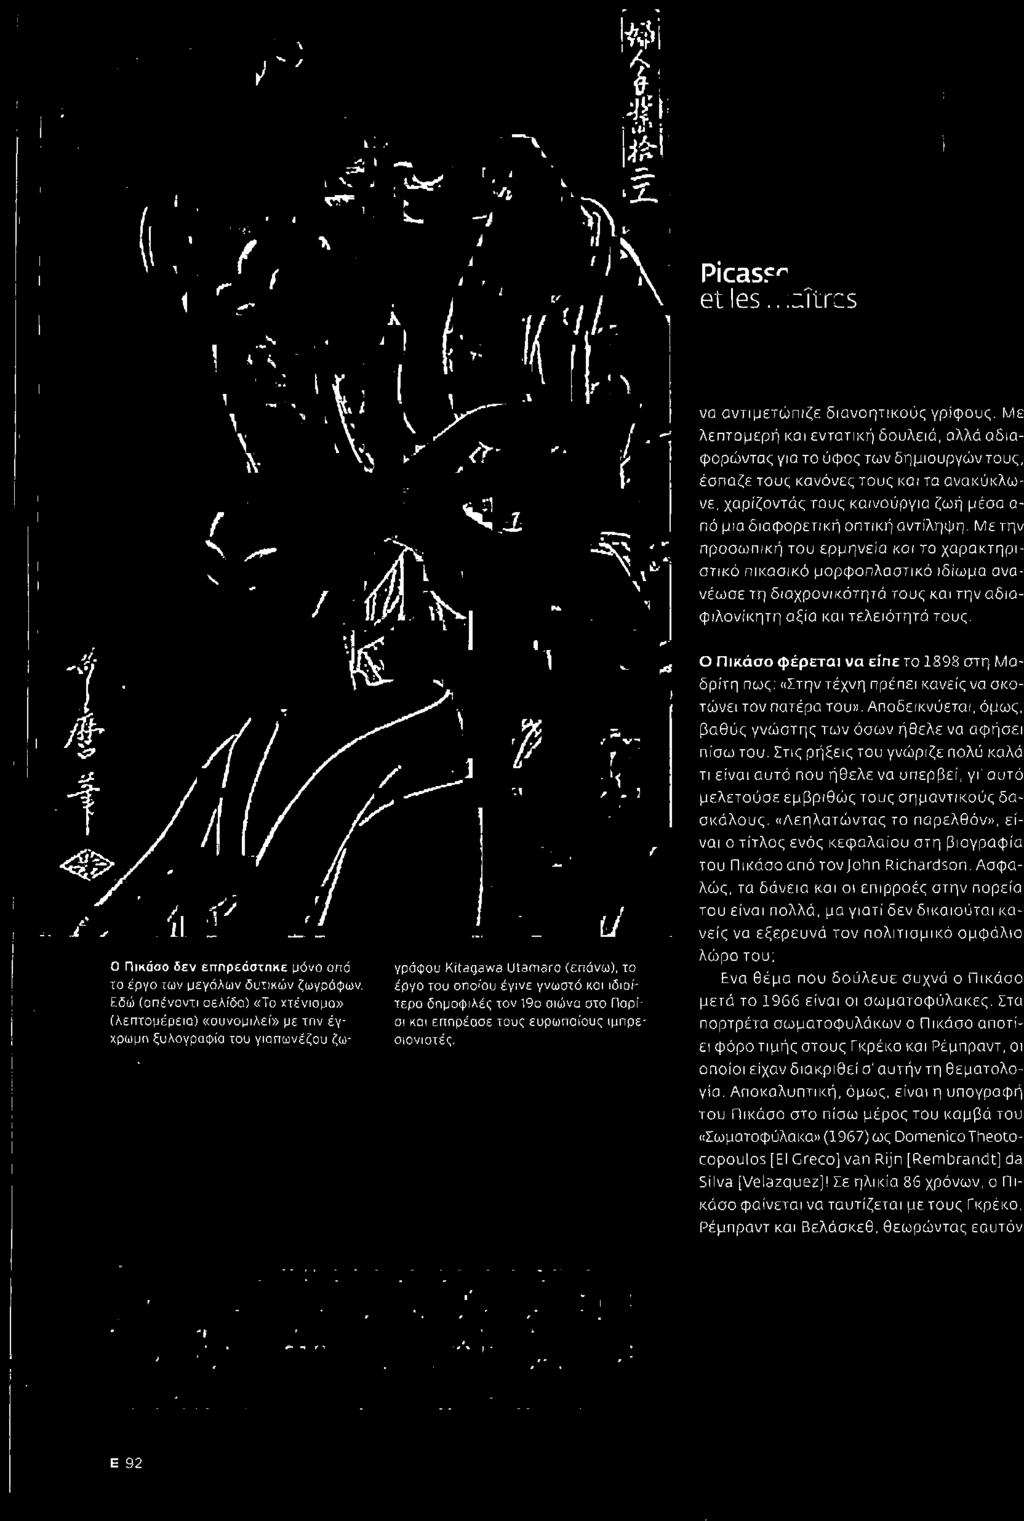 έργο του οποίου έγινε γνωστό και ιδιαί Εδώ (απέναντι σελίδα) «Το χτένισμα» τερο δπμοφlλές τον 190 αιώνα στο Παρί (λεπτομέρεlσ) «συνομιλεί» με τπν έγ σι και επηρέασε τους ευρωπσιους ιμπρε χρωμη